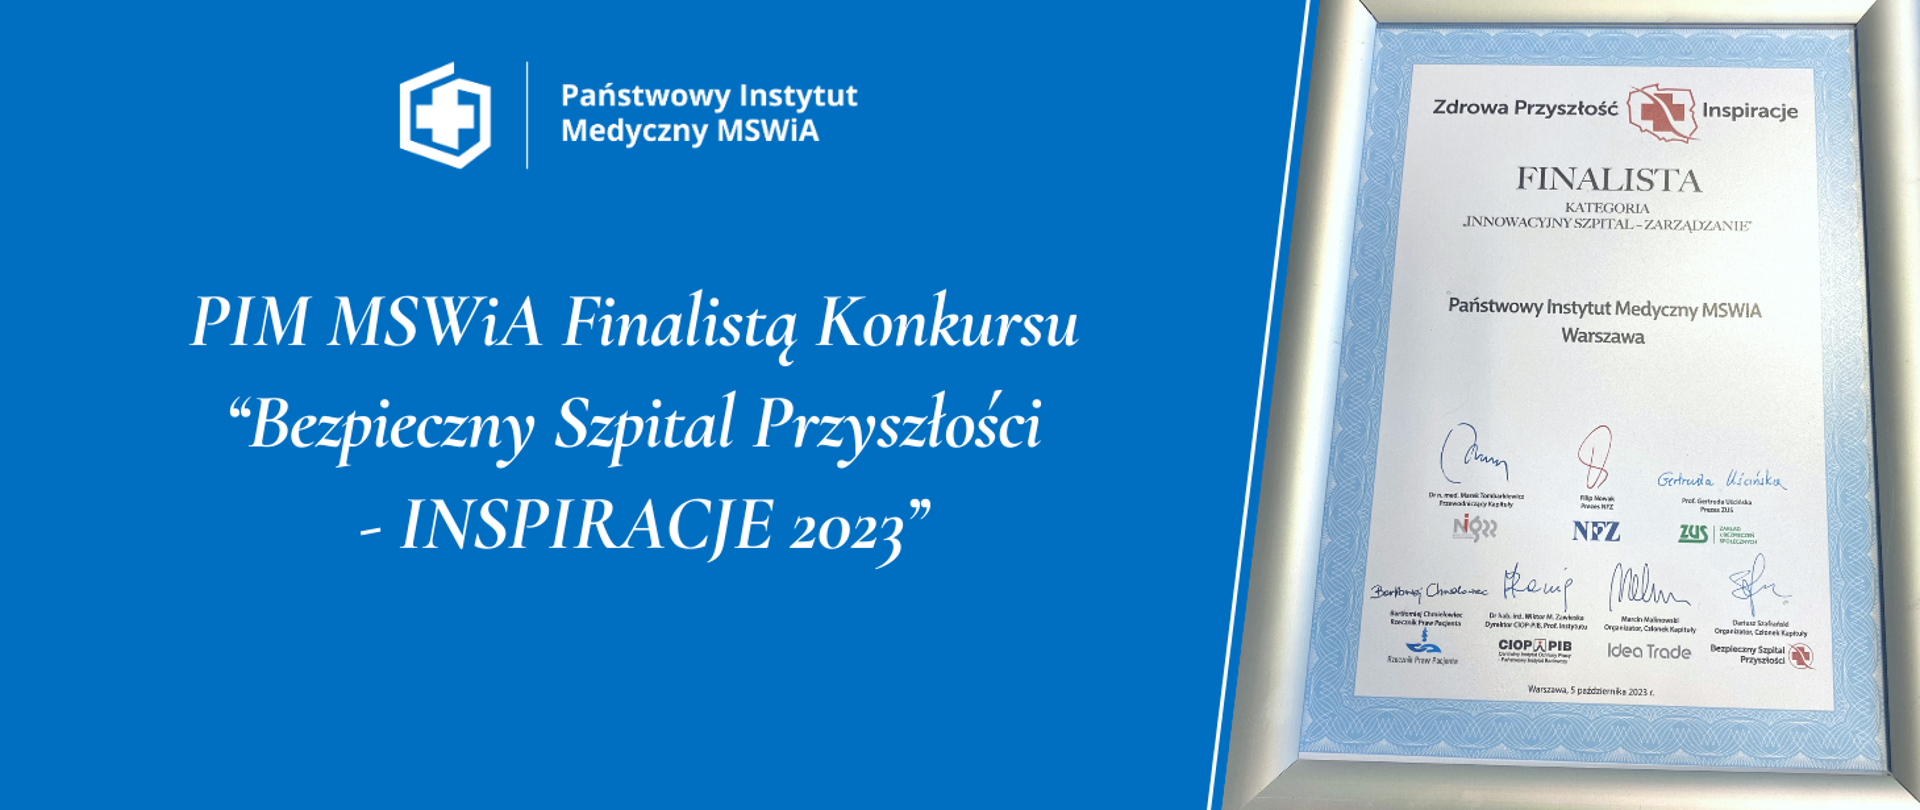 PIM MSWiA Finalistą Konkursu
‘‘Bezpieczny Szpital Przyszłości
- INSPIRACJE 2023’’